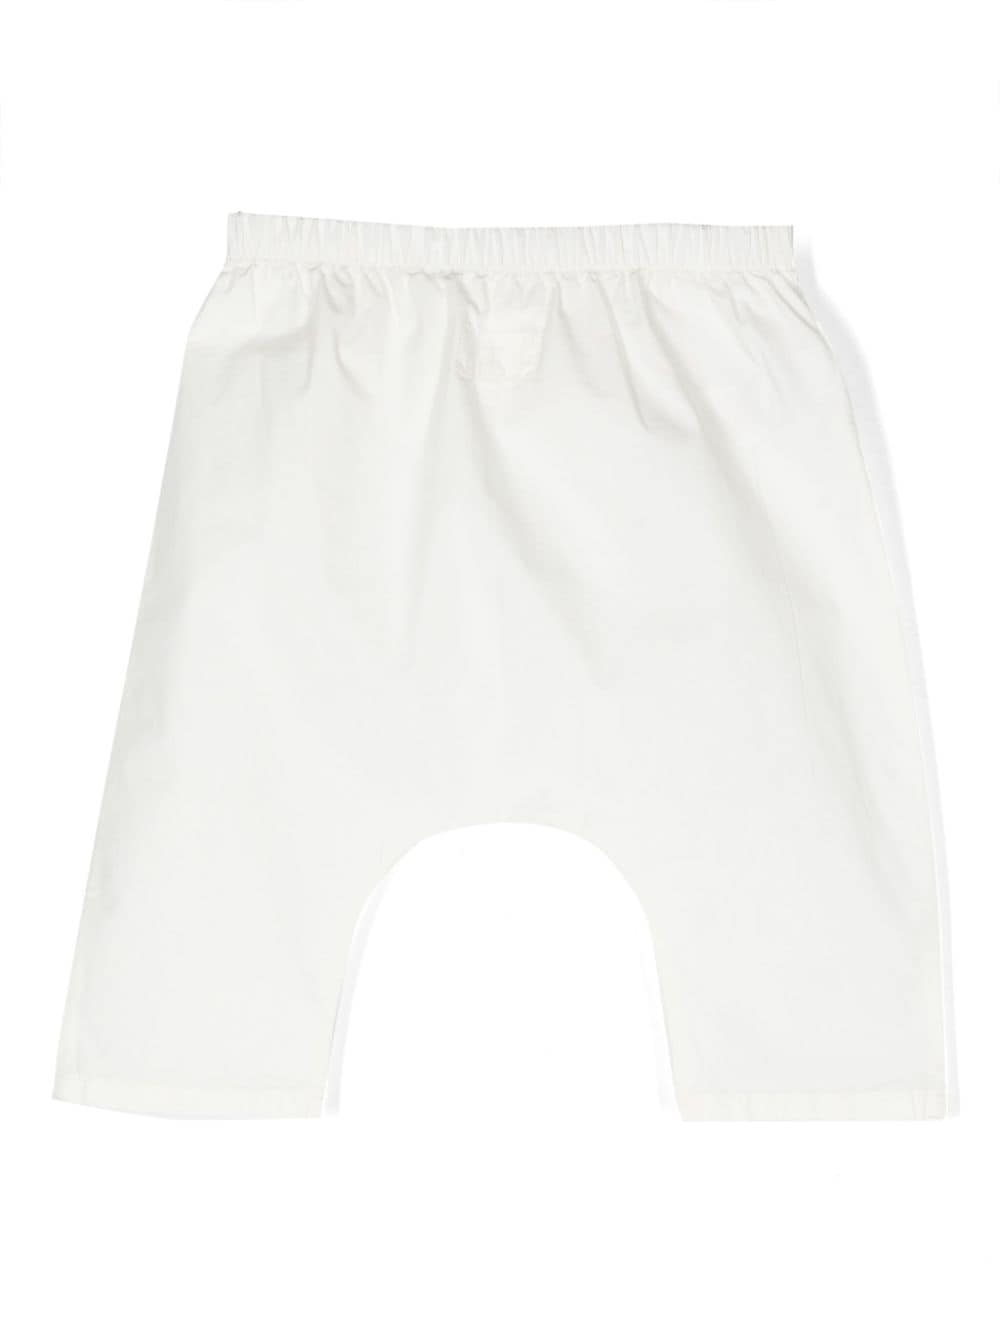 Pantaloni bianchi neonato